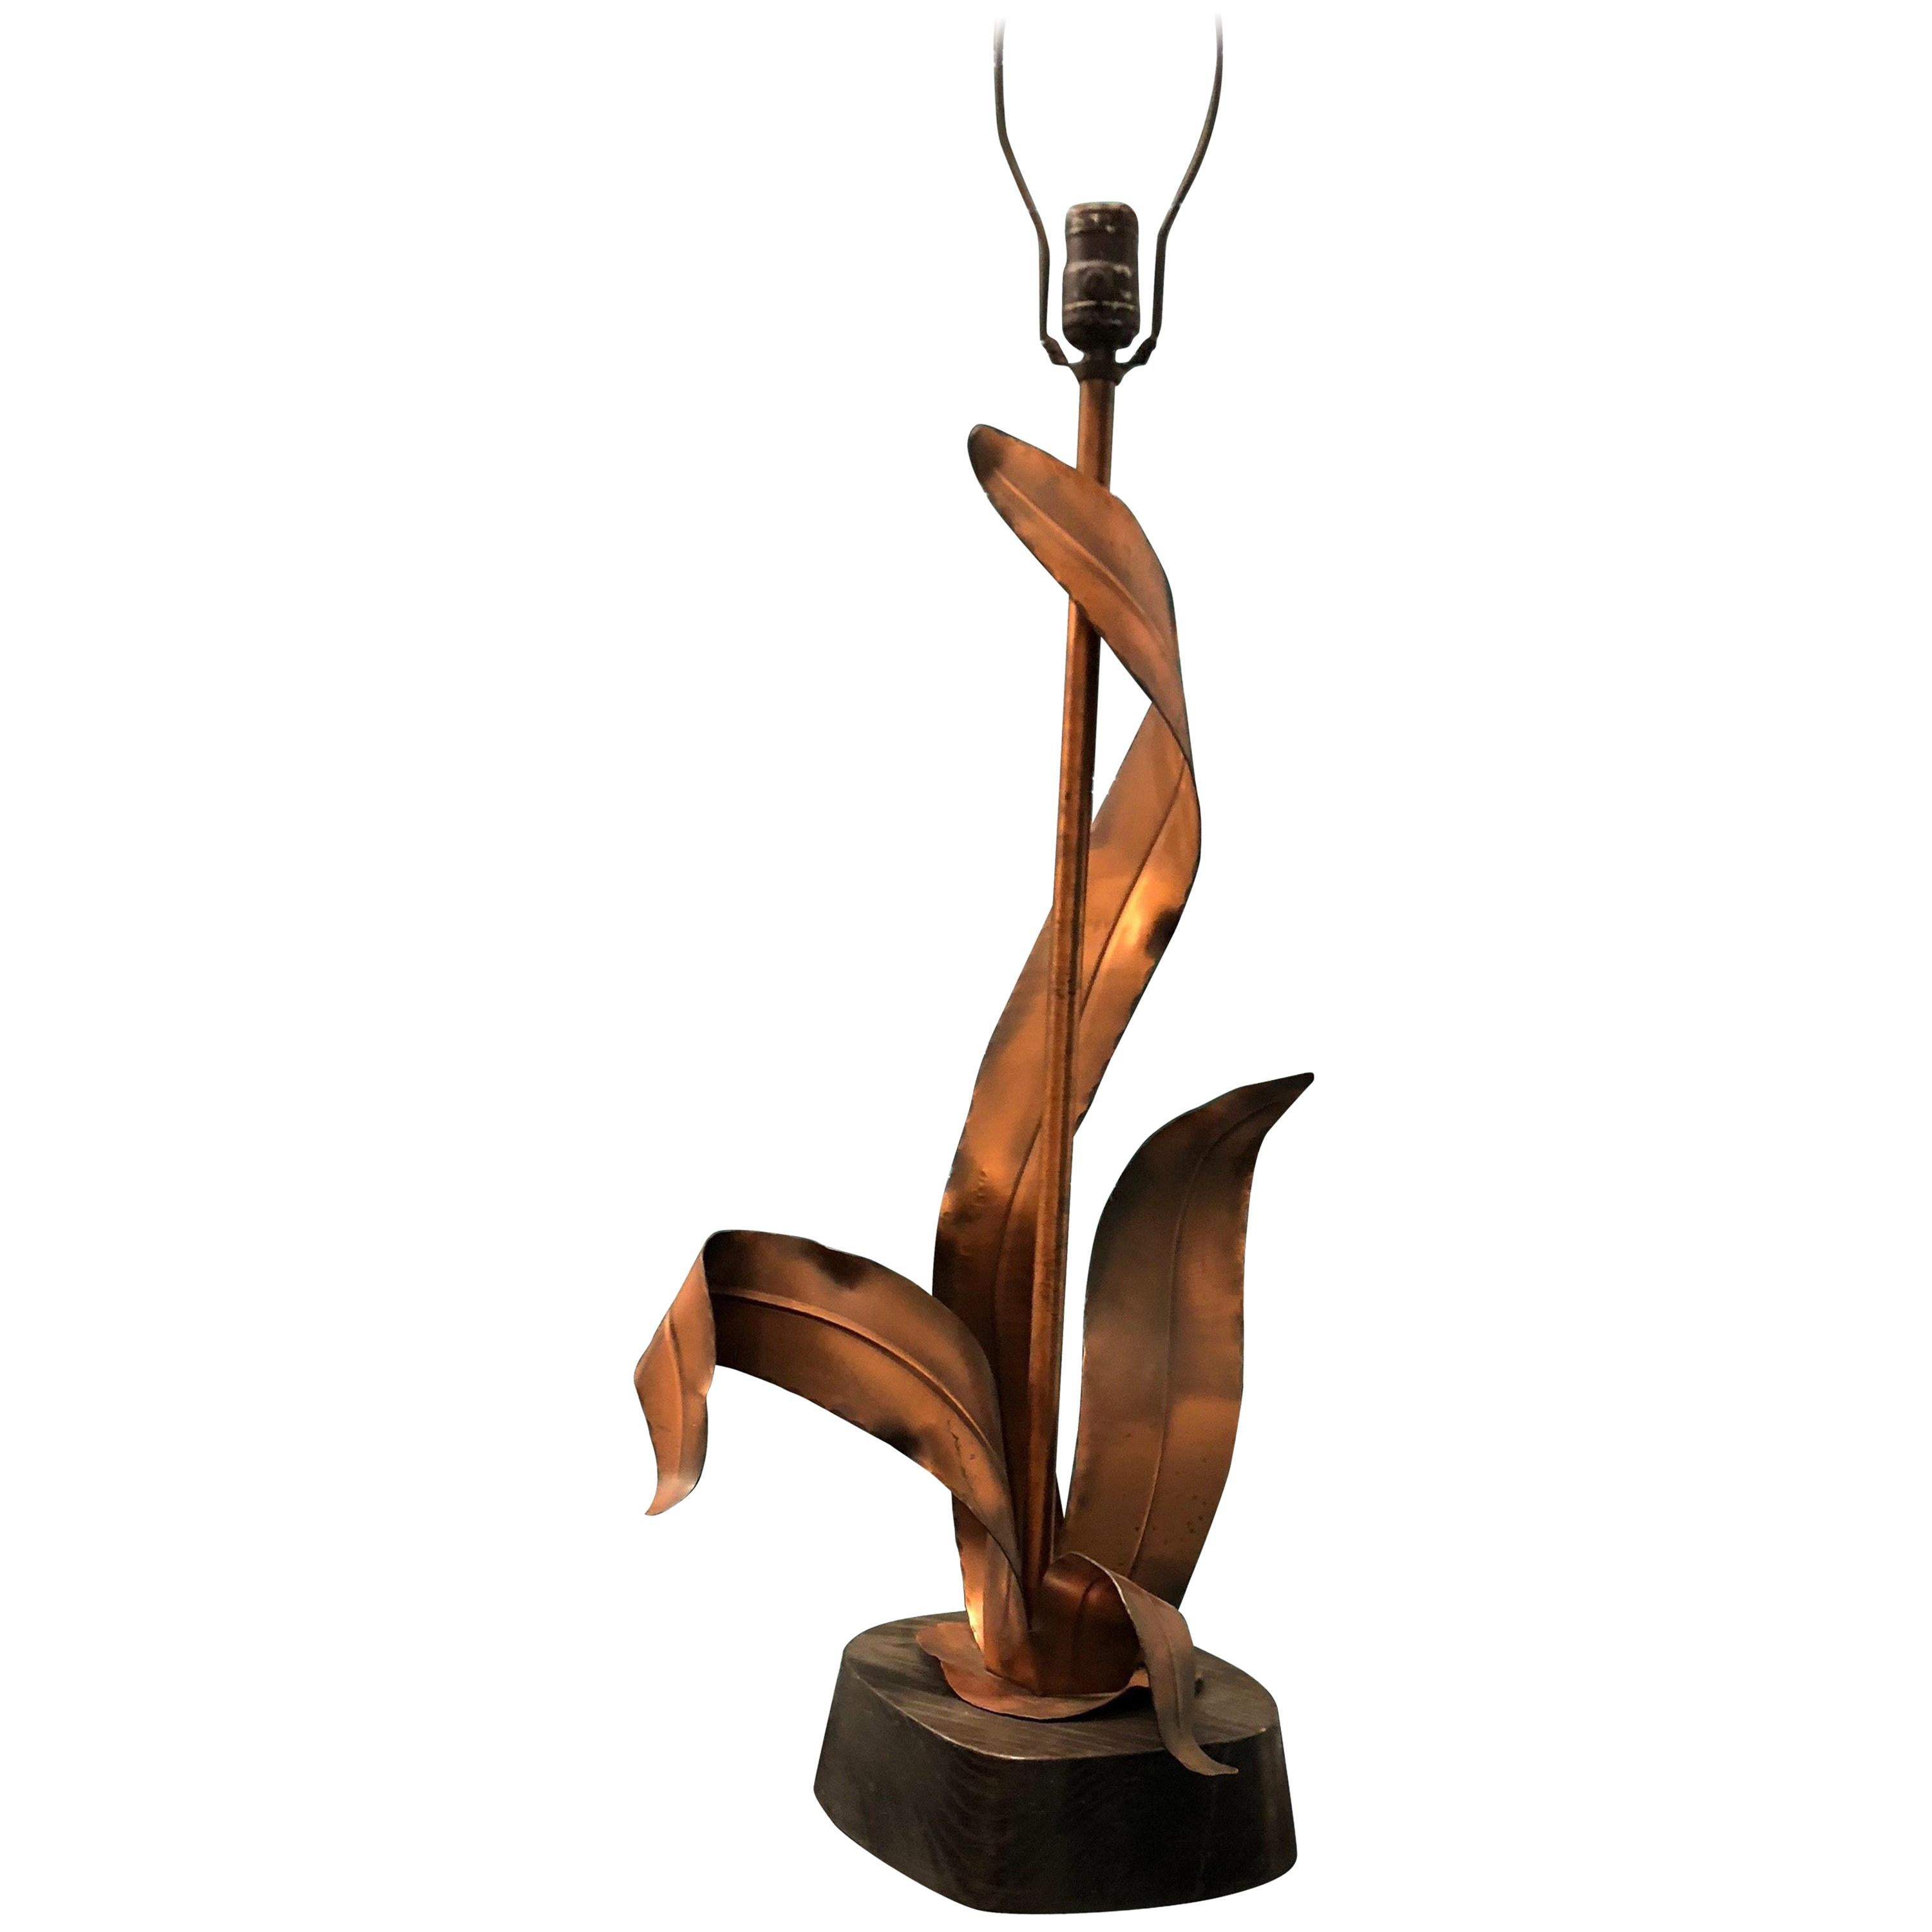 Lampe de table figurative en cuivre et bois feuillagés, Yasha Heifetz 1960s . Lorsque Marcel Breuer a conçu et meublé une maison pour une exposition au Musée d'art moderne de New York, il a intentionnellement laissé de côté les lampes. Lors d'une